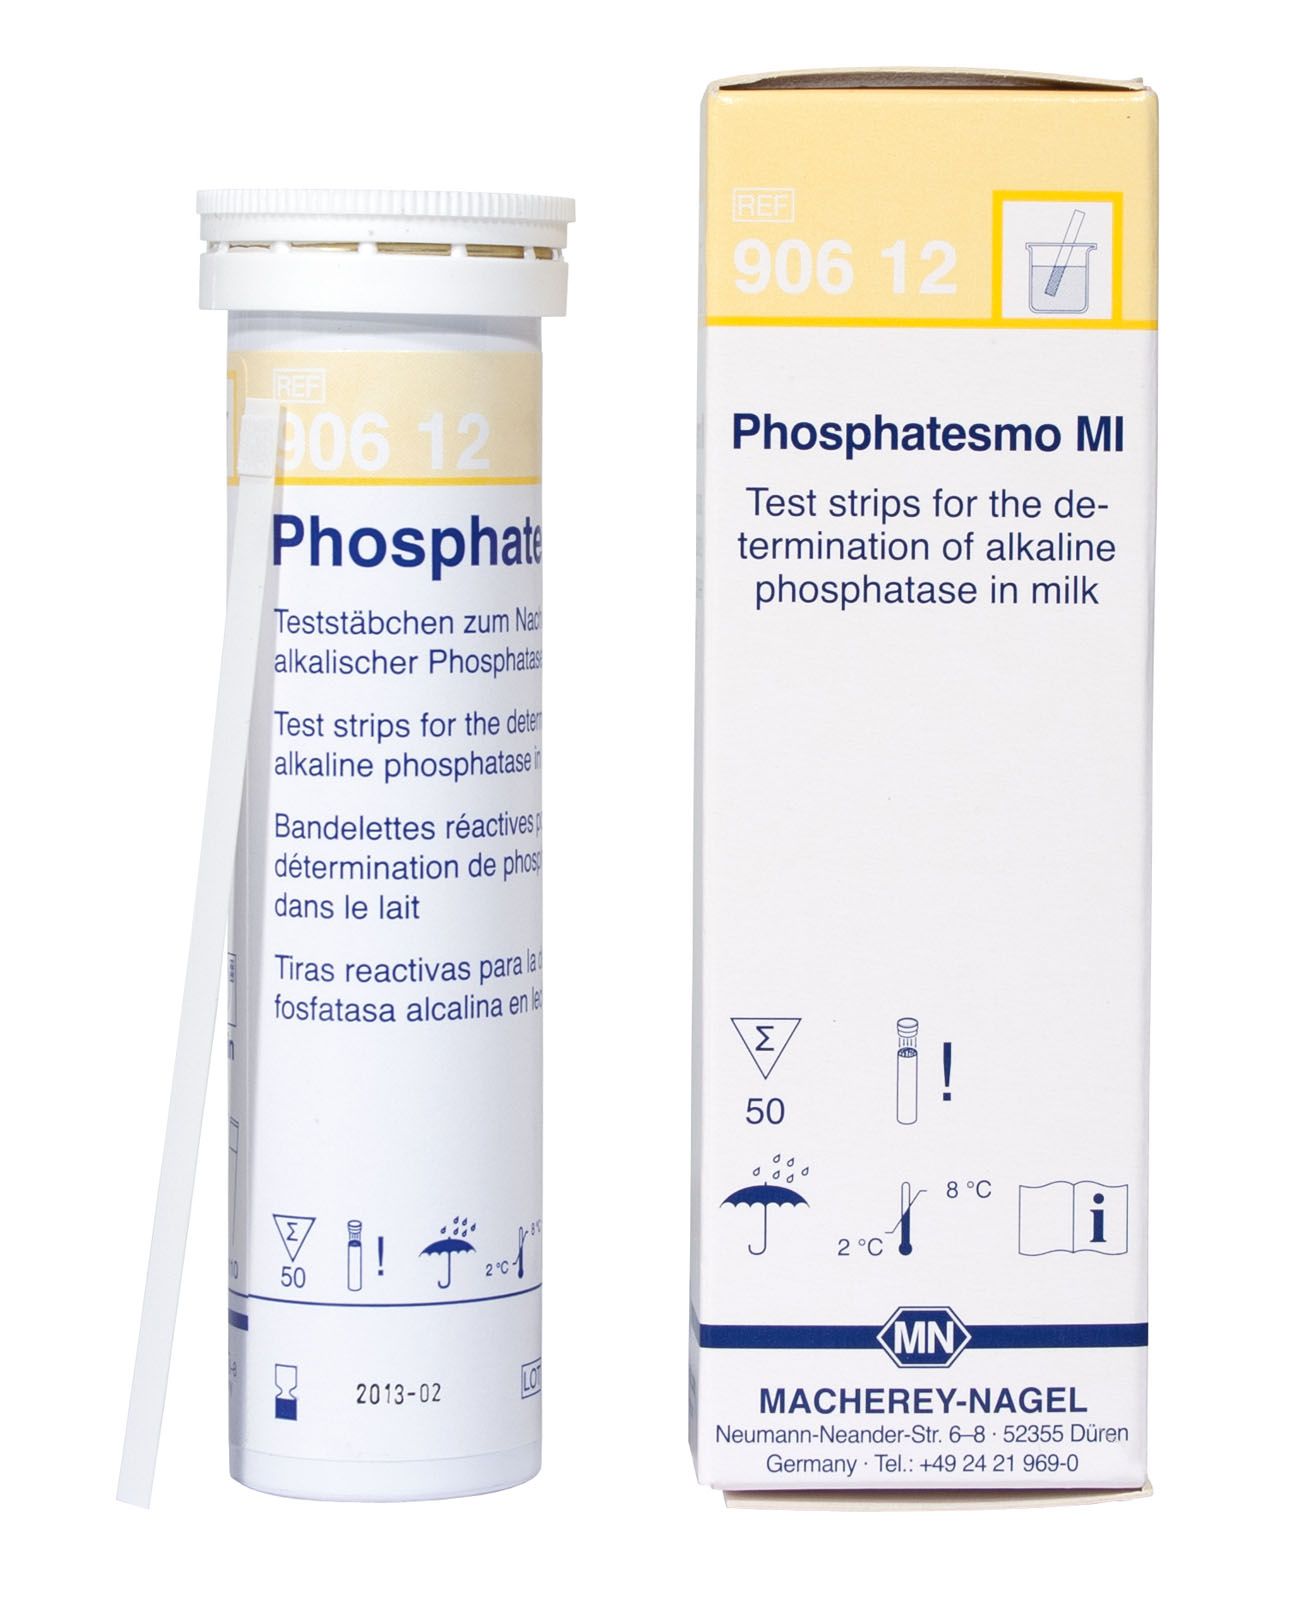 Phosphatesmo MI Test Paper